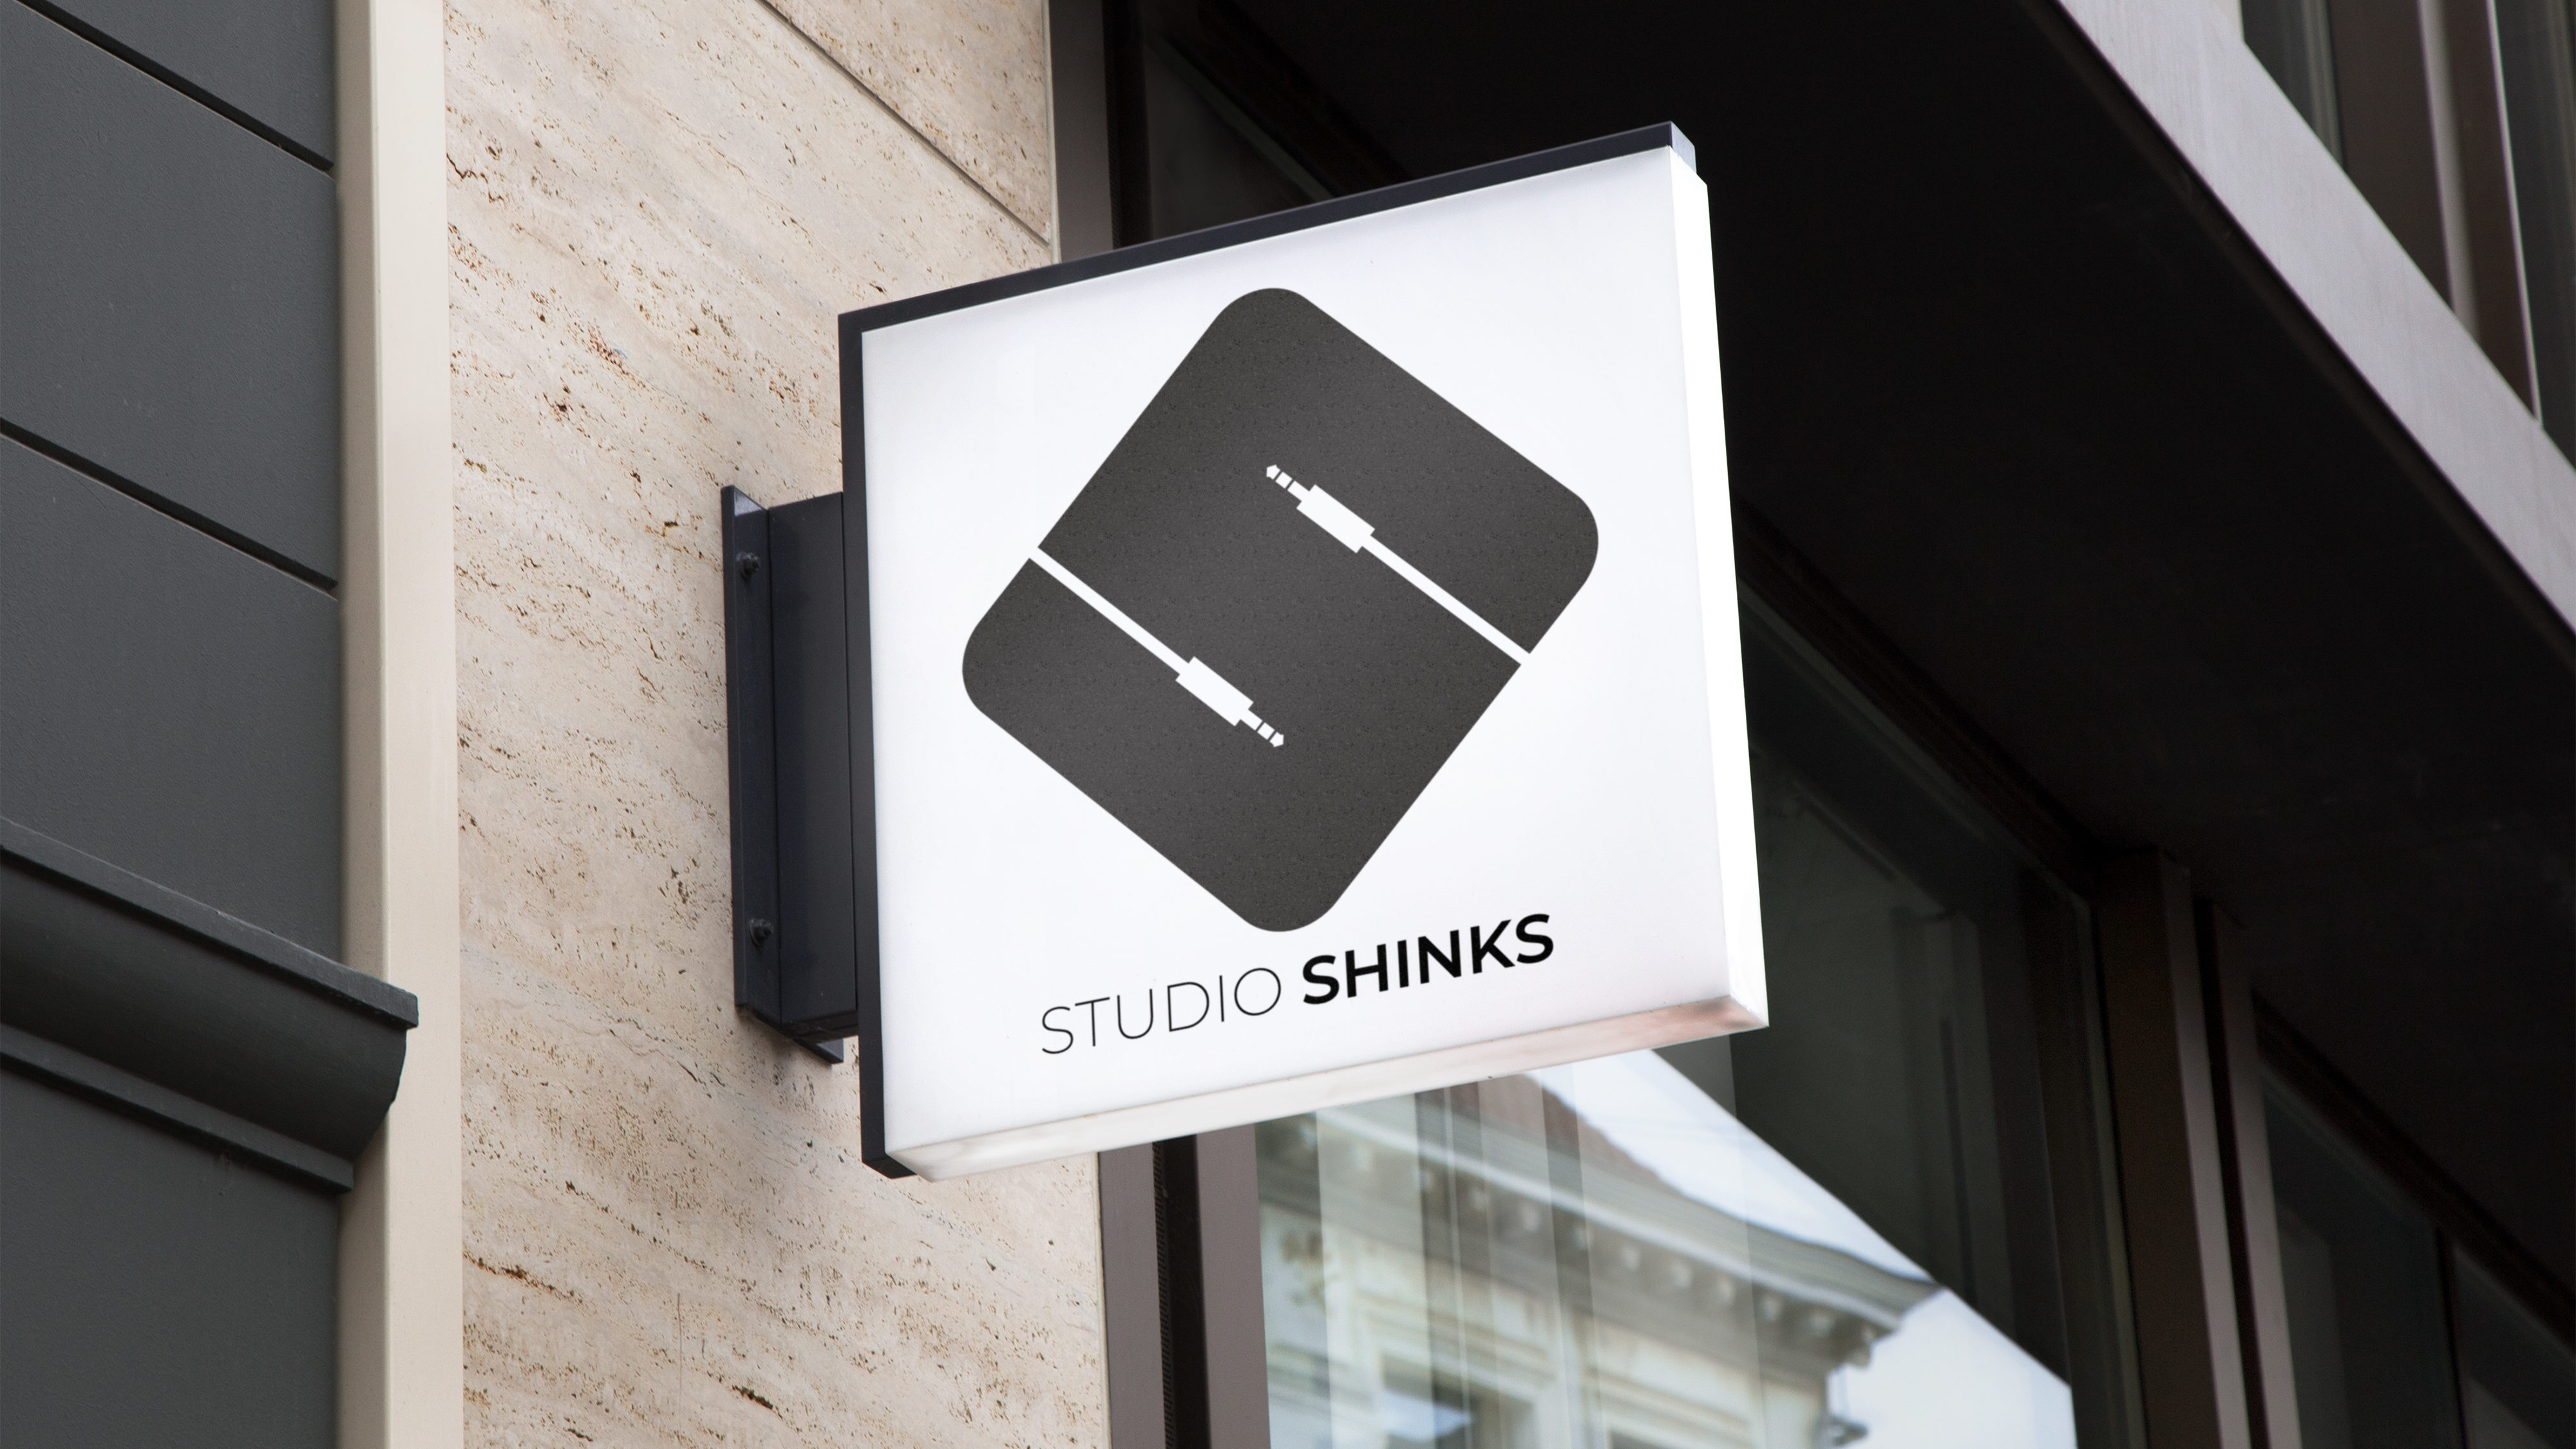 STUDIO SHINKS